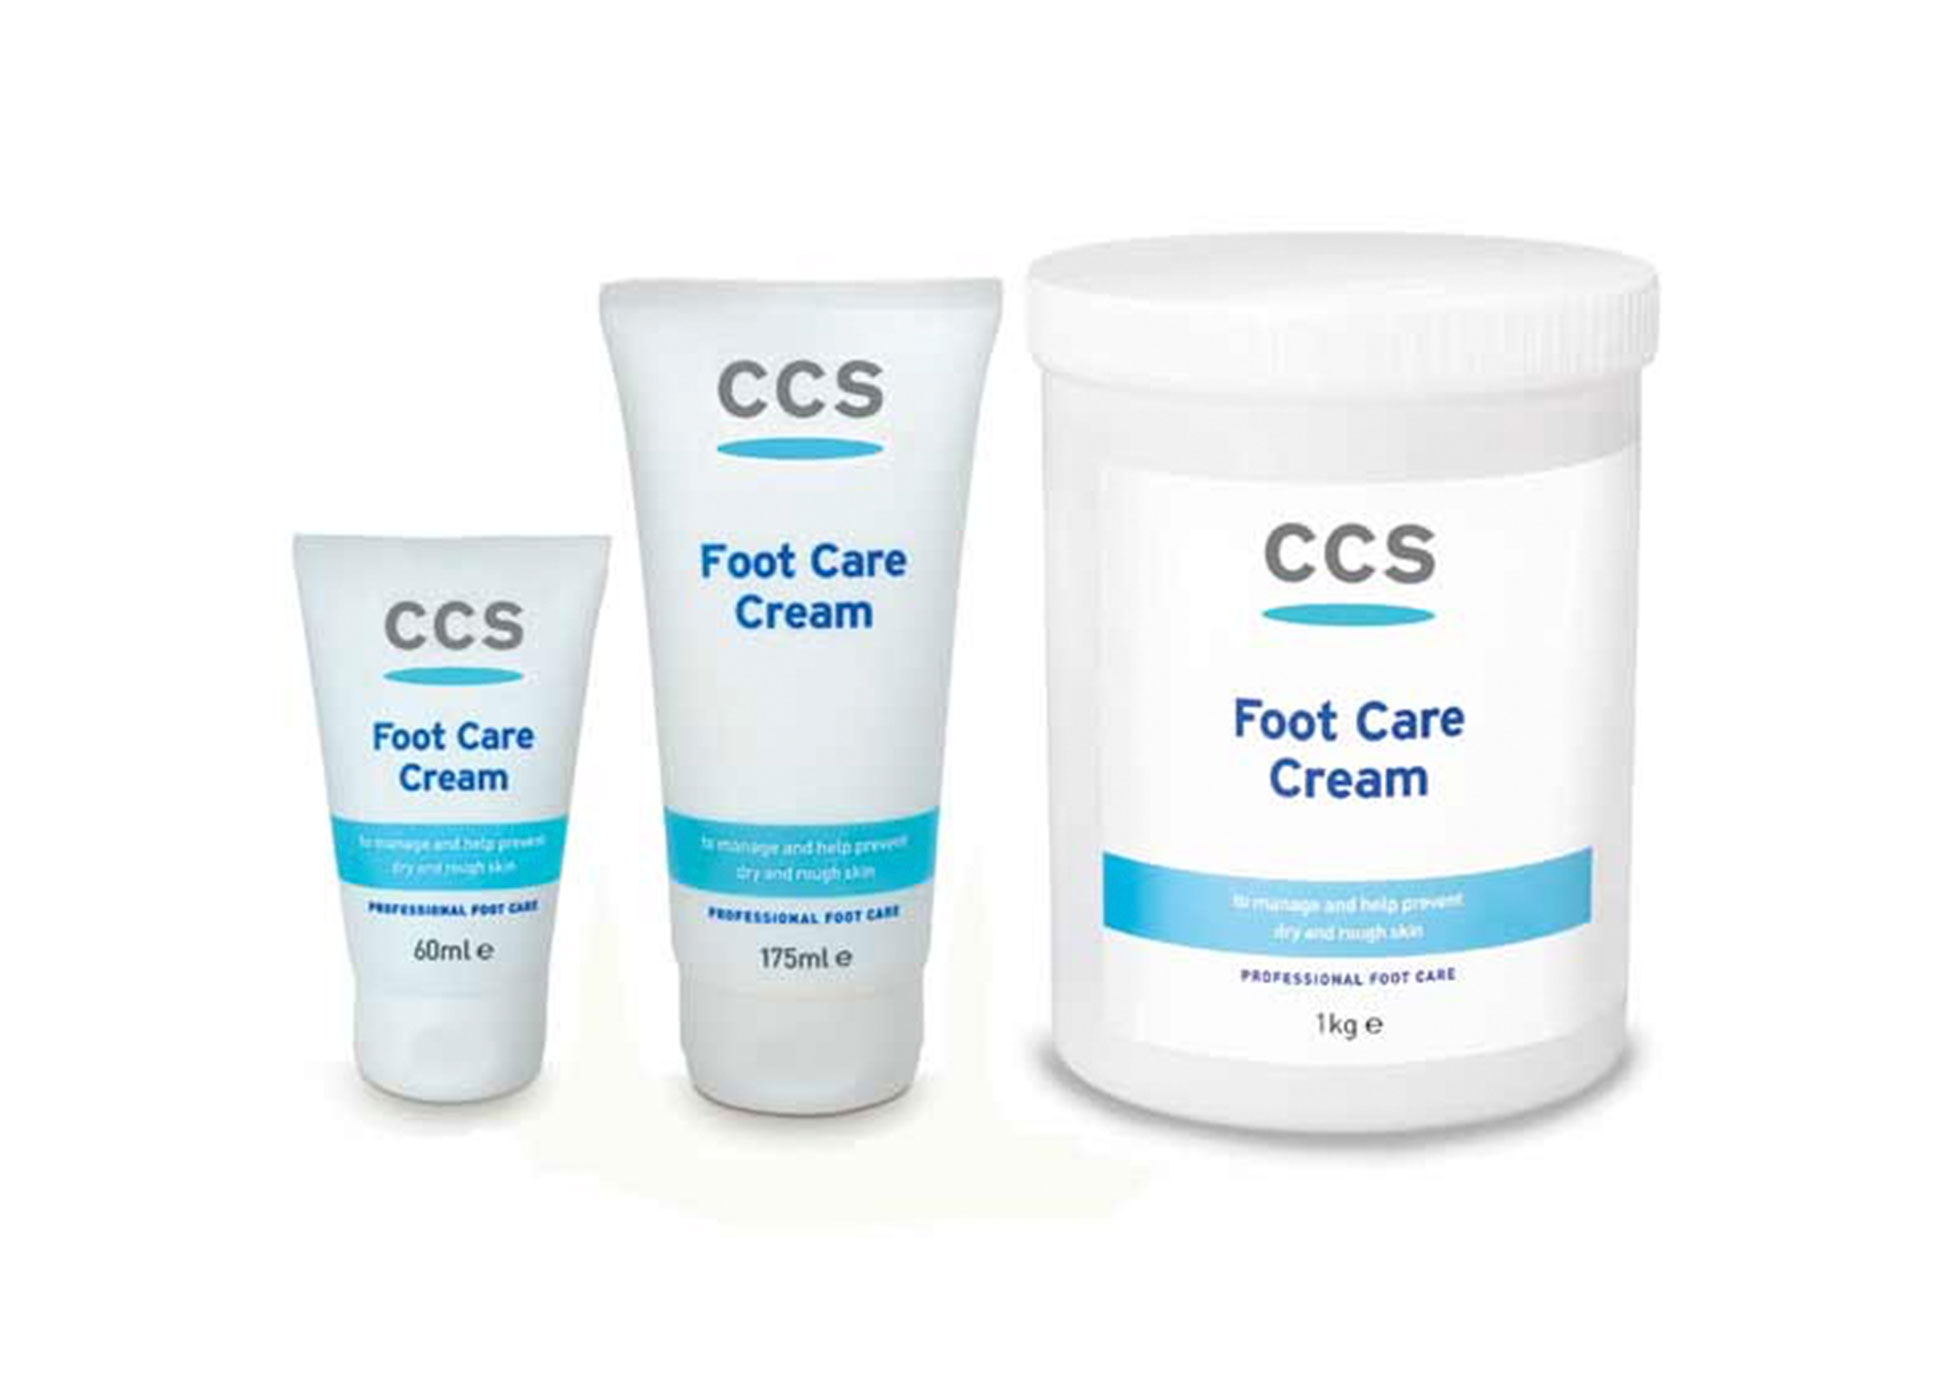 CCS Creams - Foot Care Cream - Pump Top for 1kg Tub